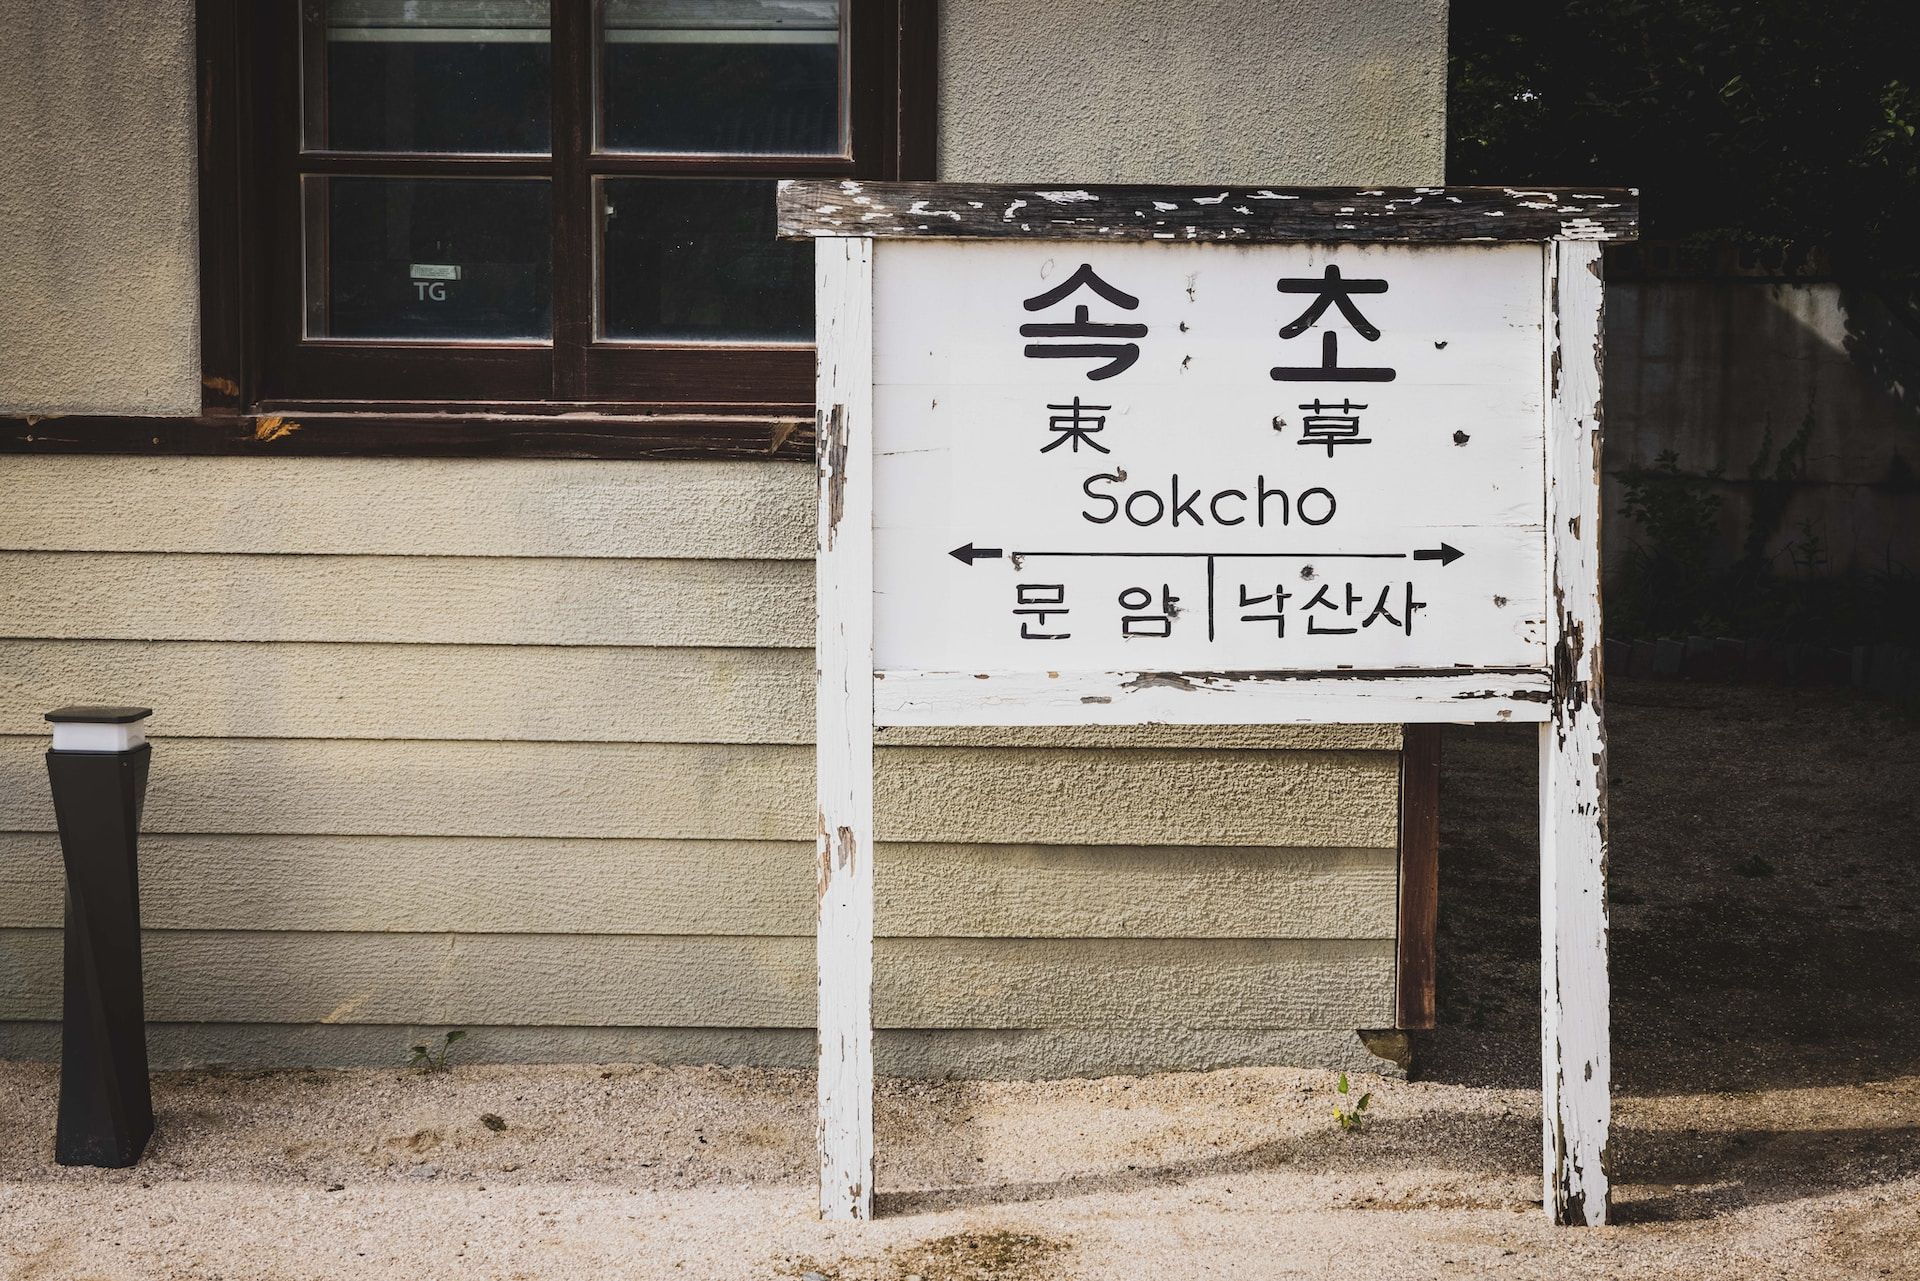 A board with Sokcho written on it